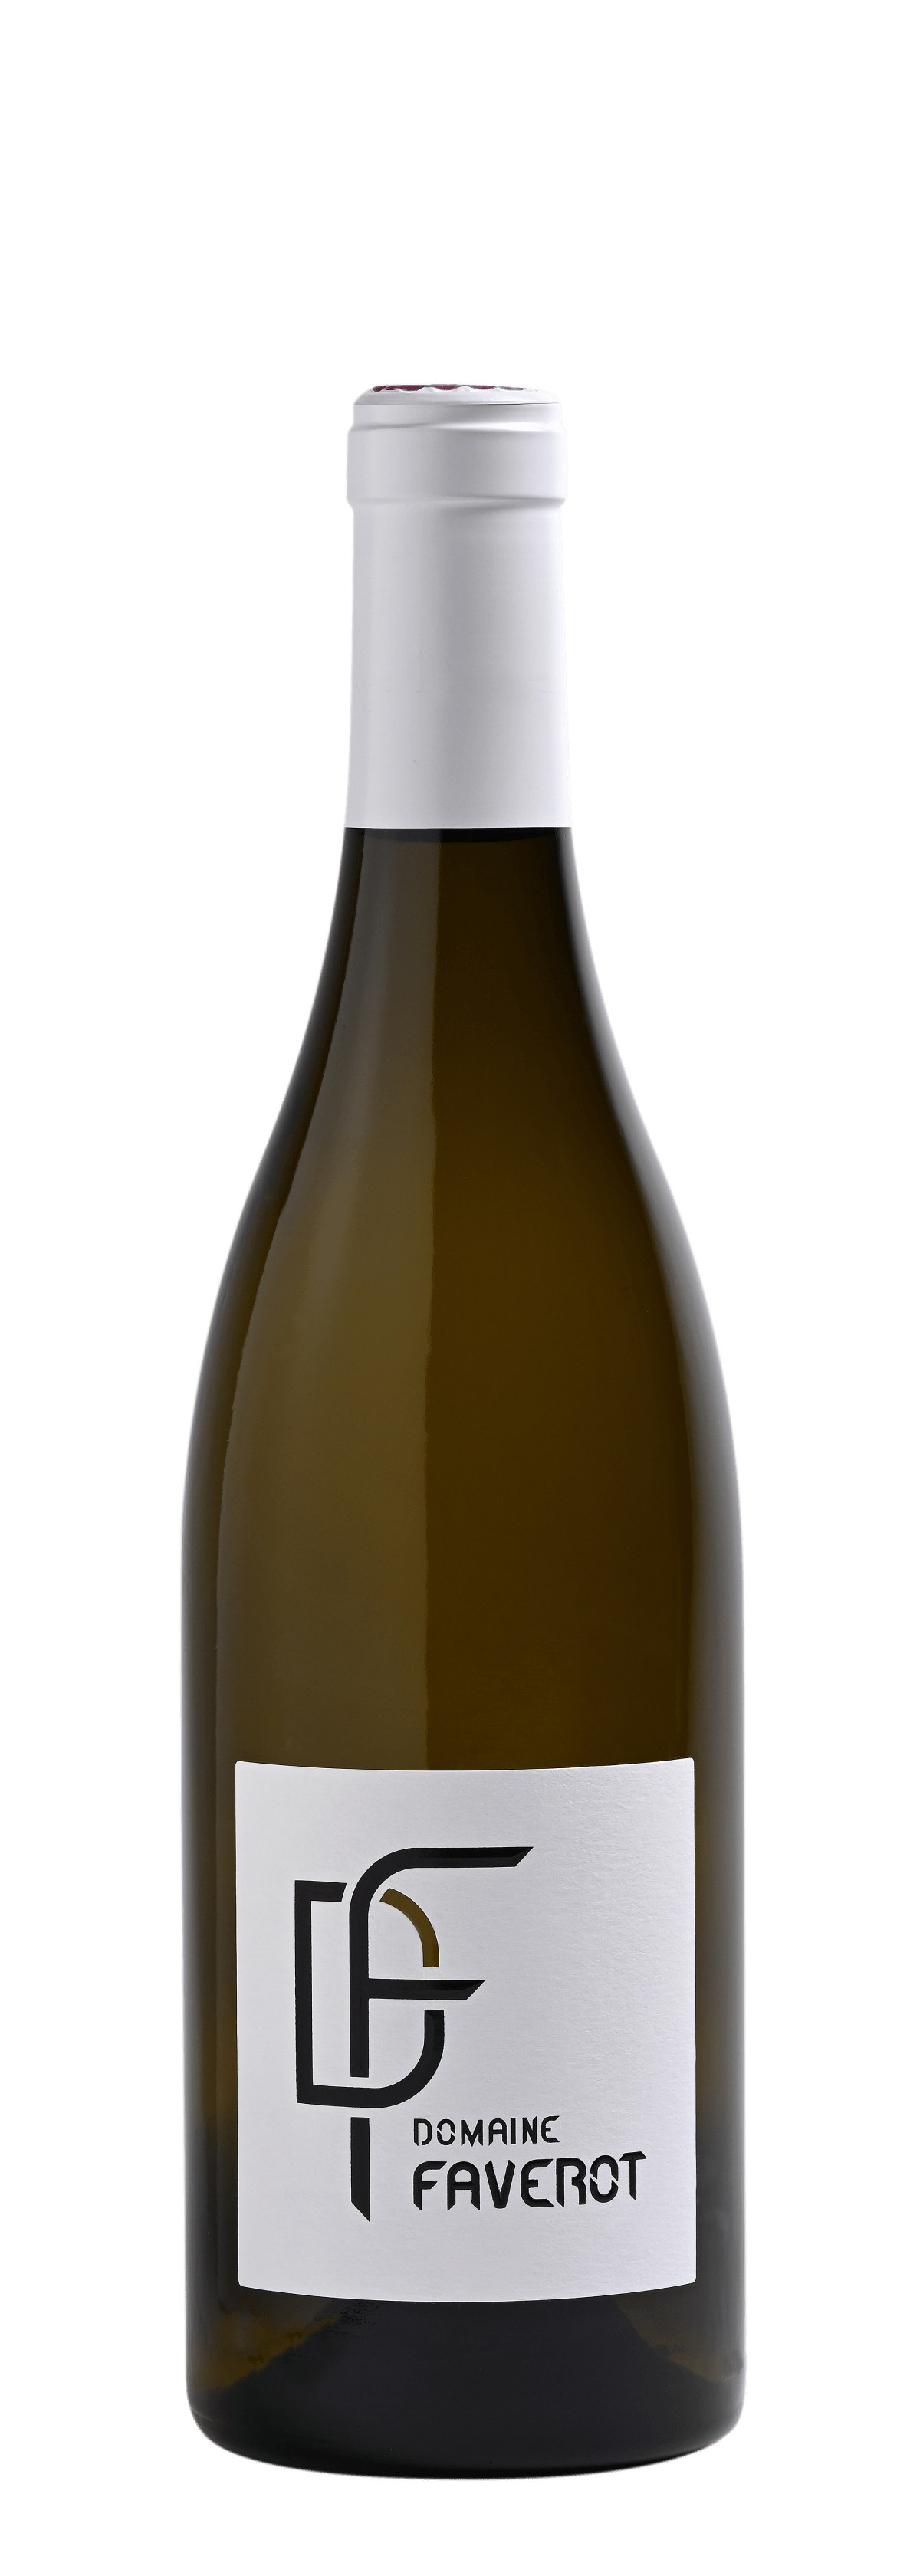 Bottle of white wine Domaine Faverot